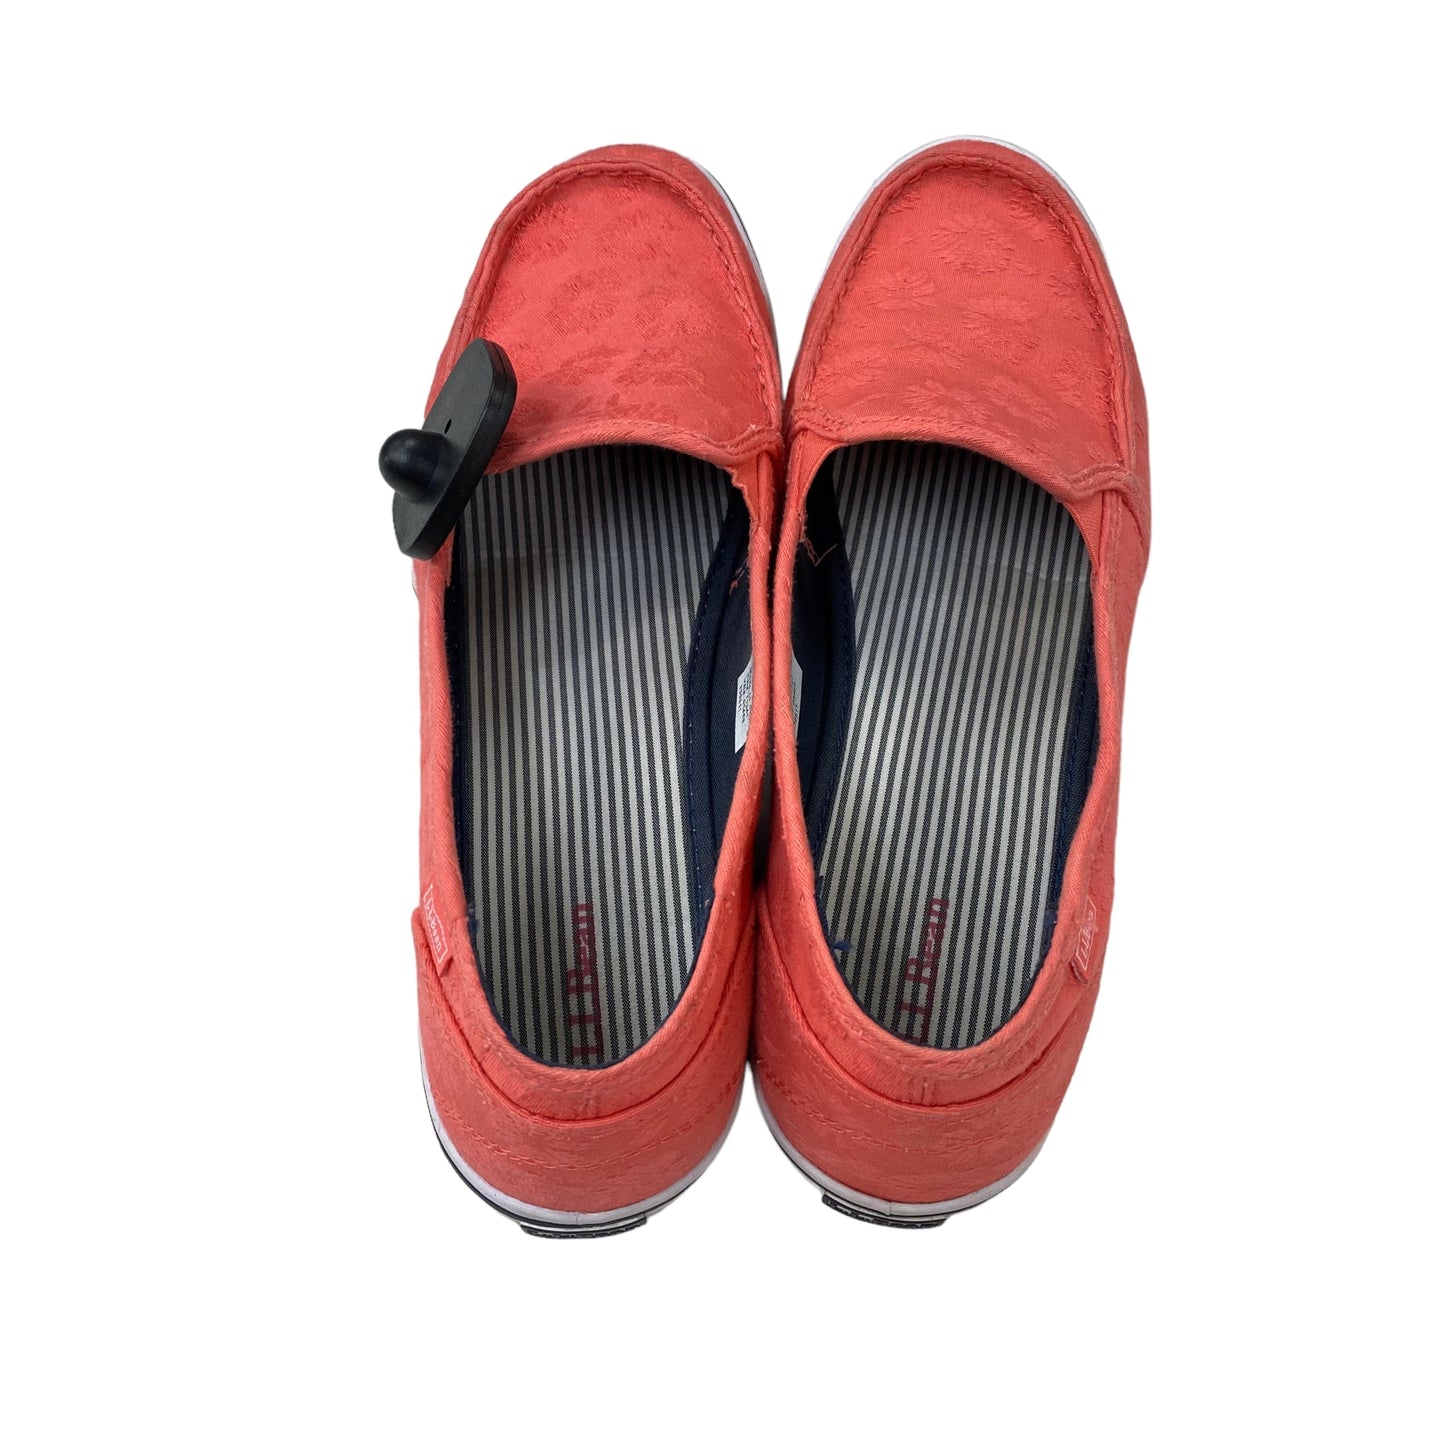 Shoes Flats By L.l. Bean  Size: 9.5